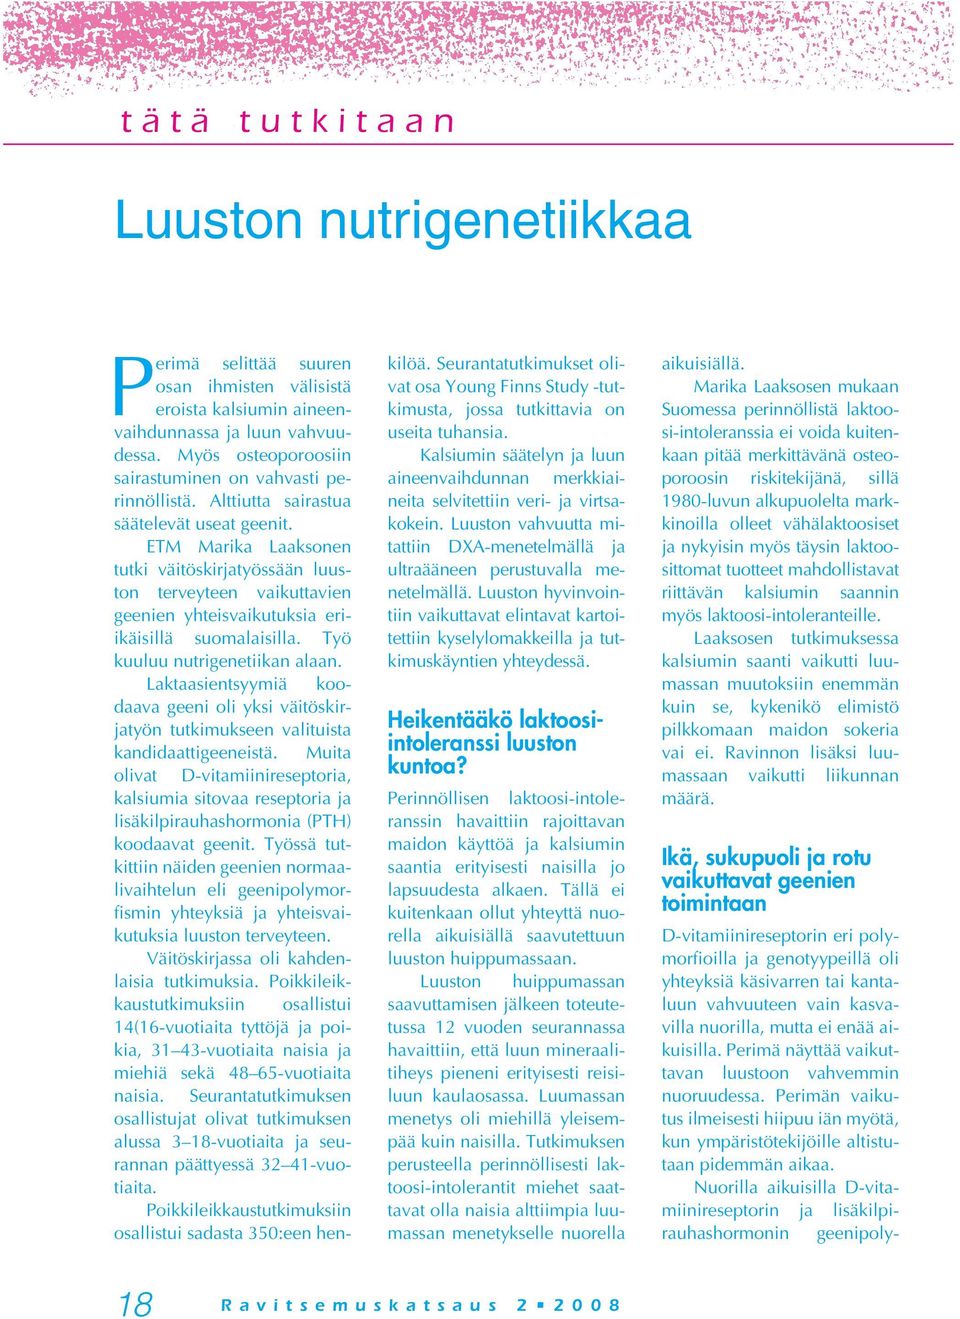 ETM Marika Laaksonen tutki väitöskirjatyössään luuston terveyteen vaikuttavien geenien yhteisvaikutuksia eriikäisillä suomalaisilla. Työ kuuluu nutrigenetiikan alaan.